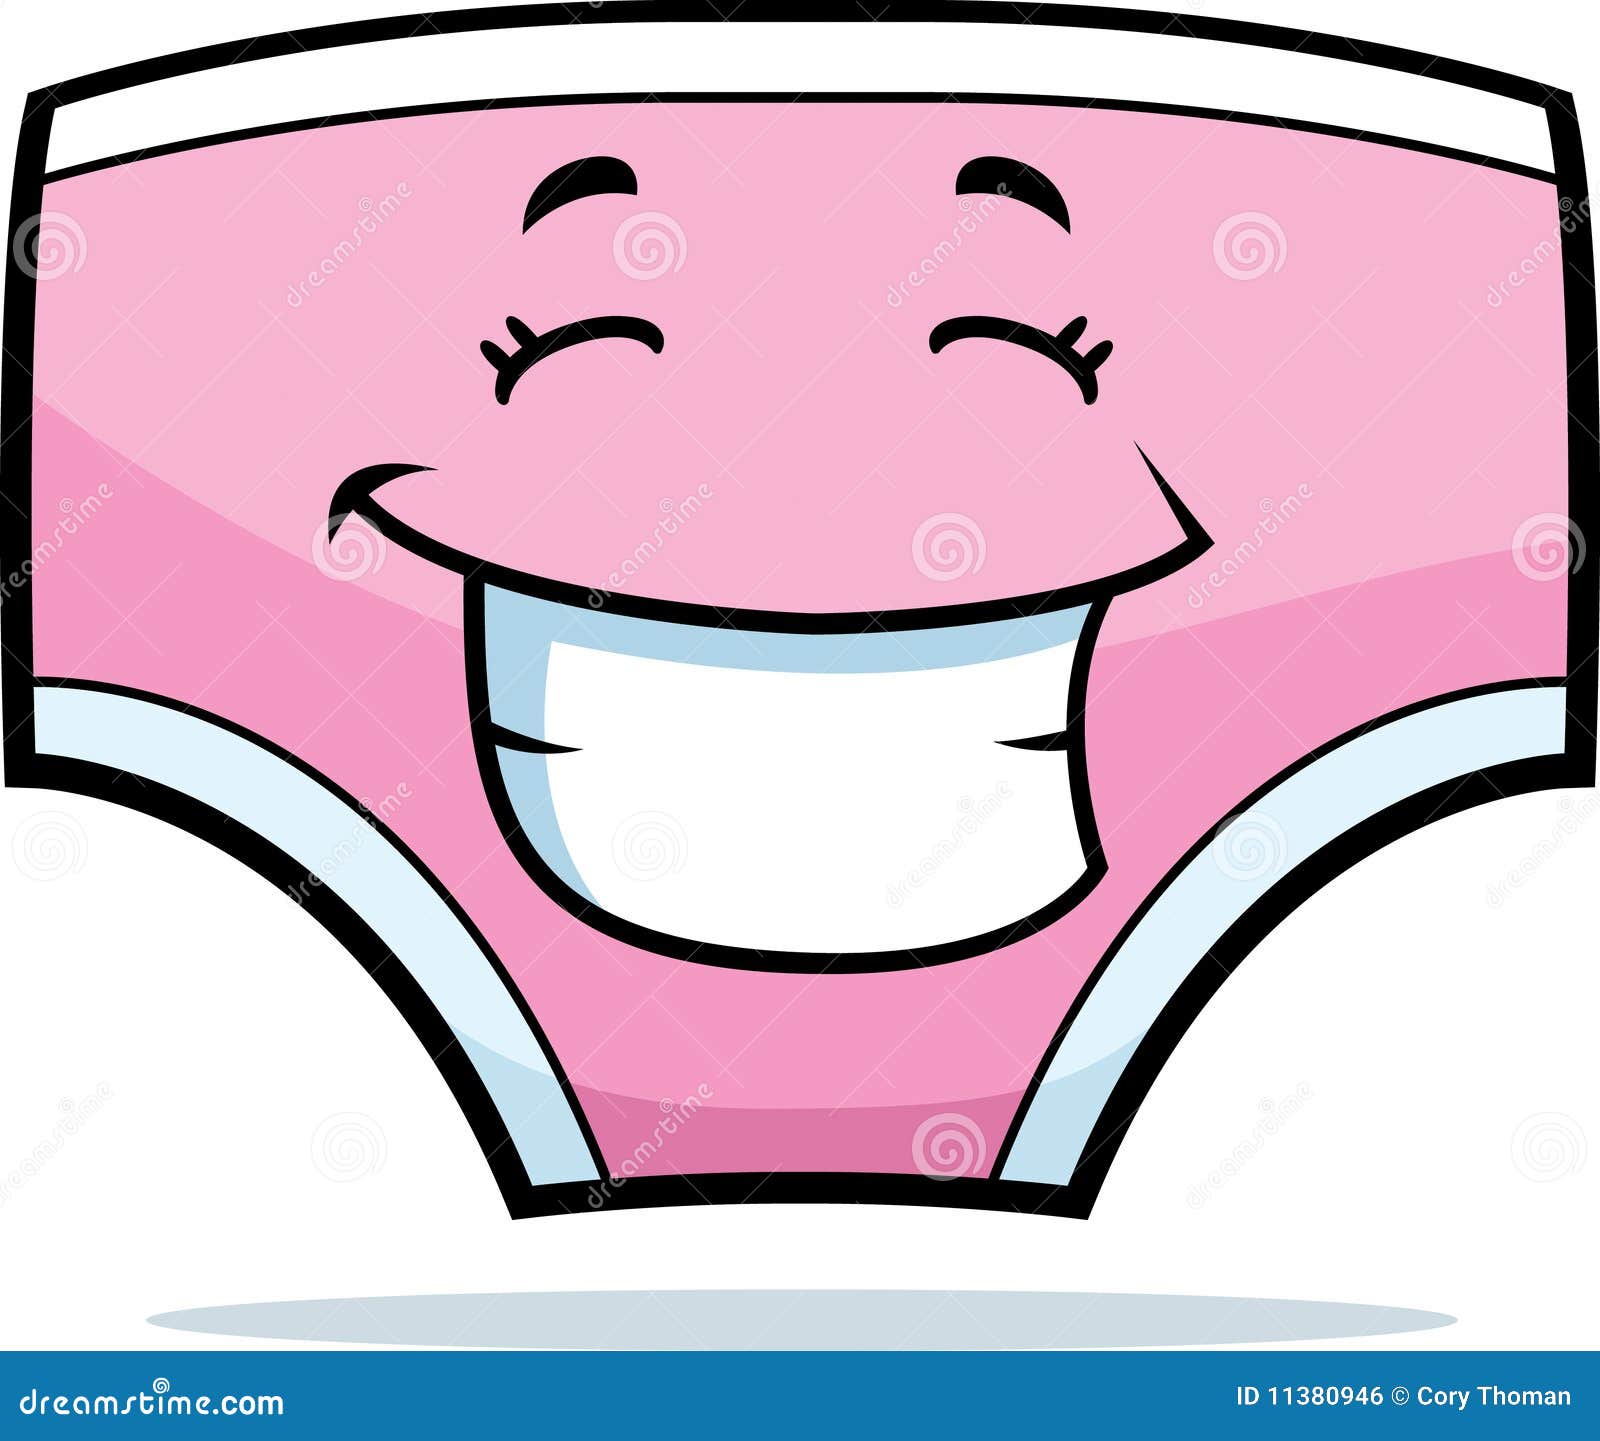 underwear cartoon clip art - photo #1